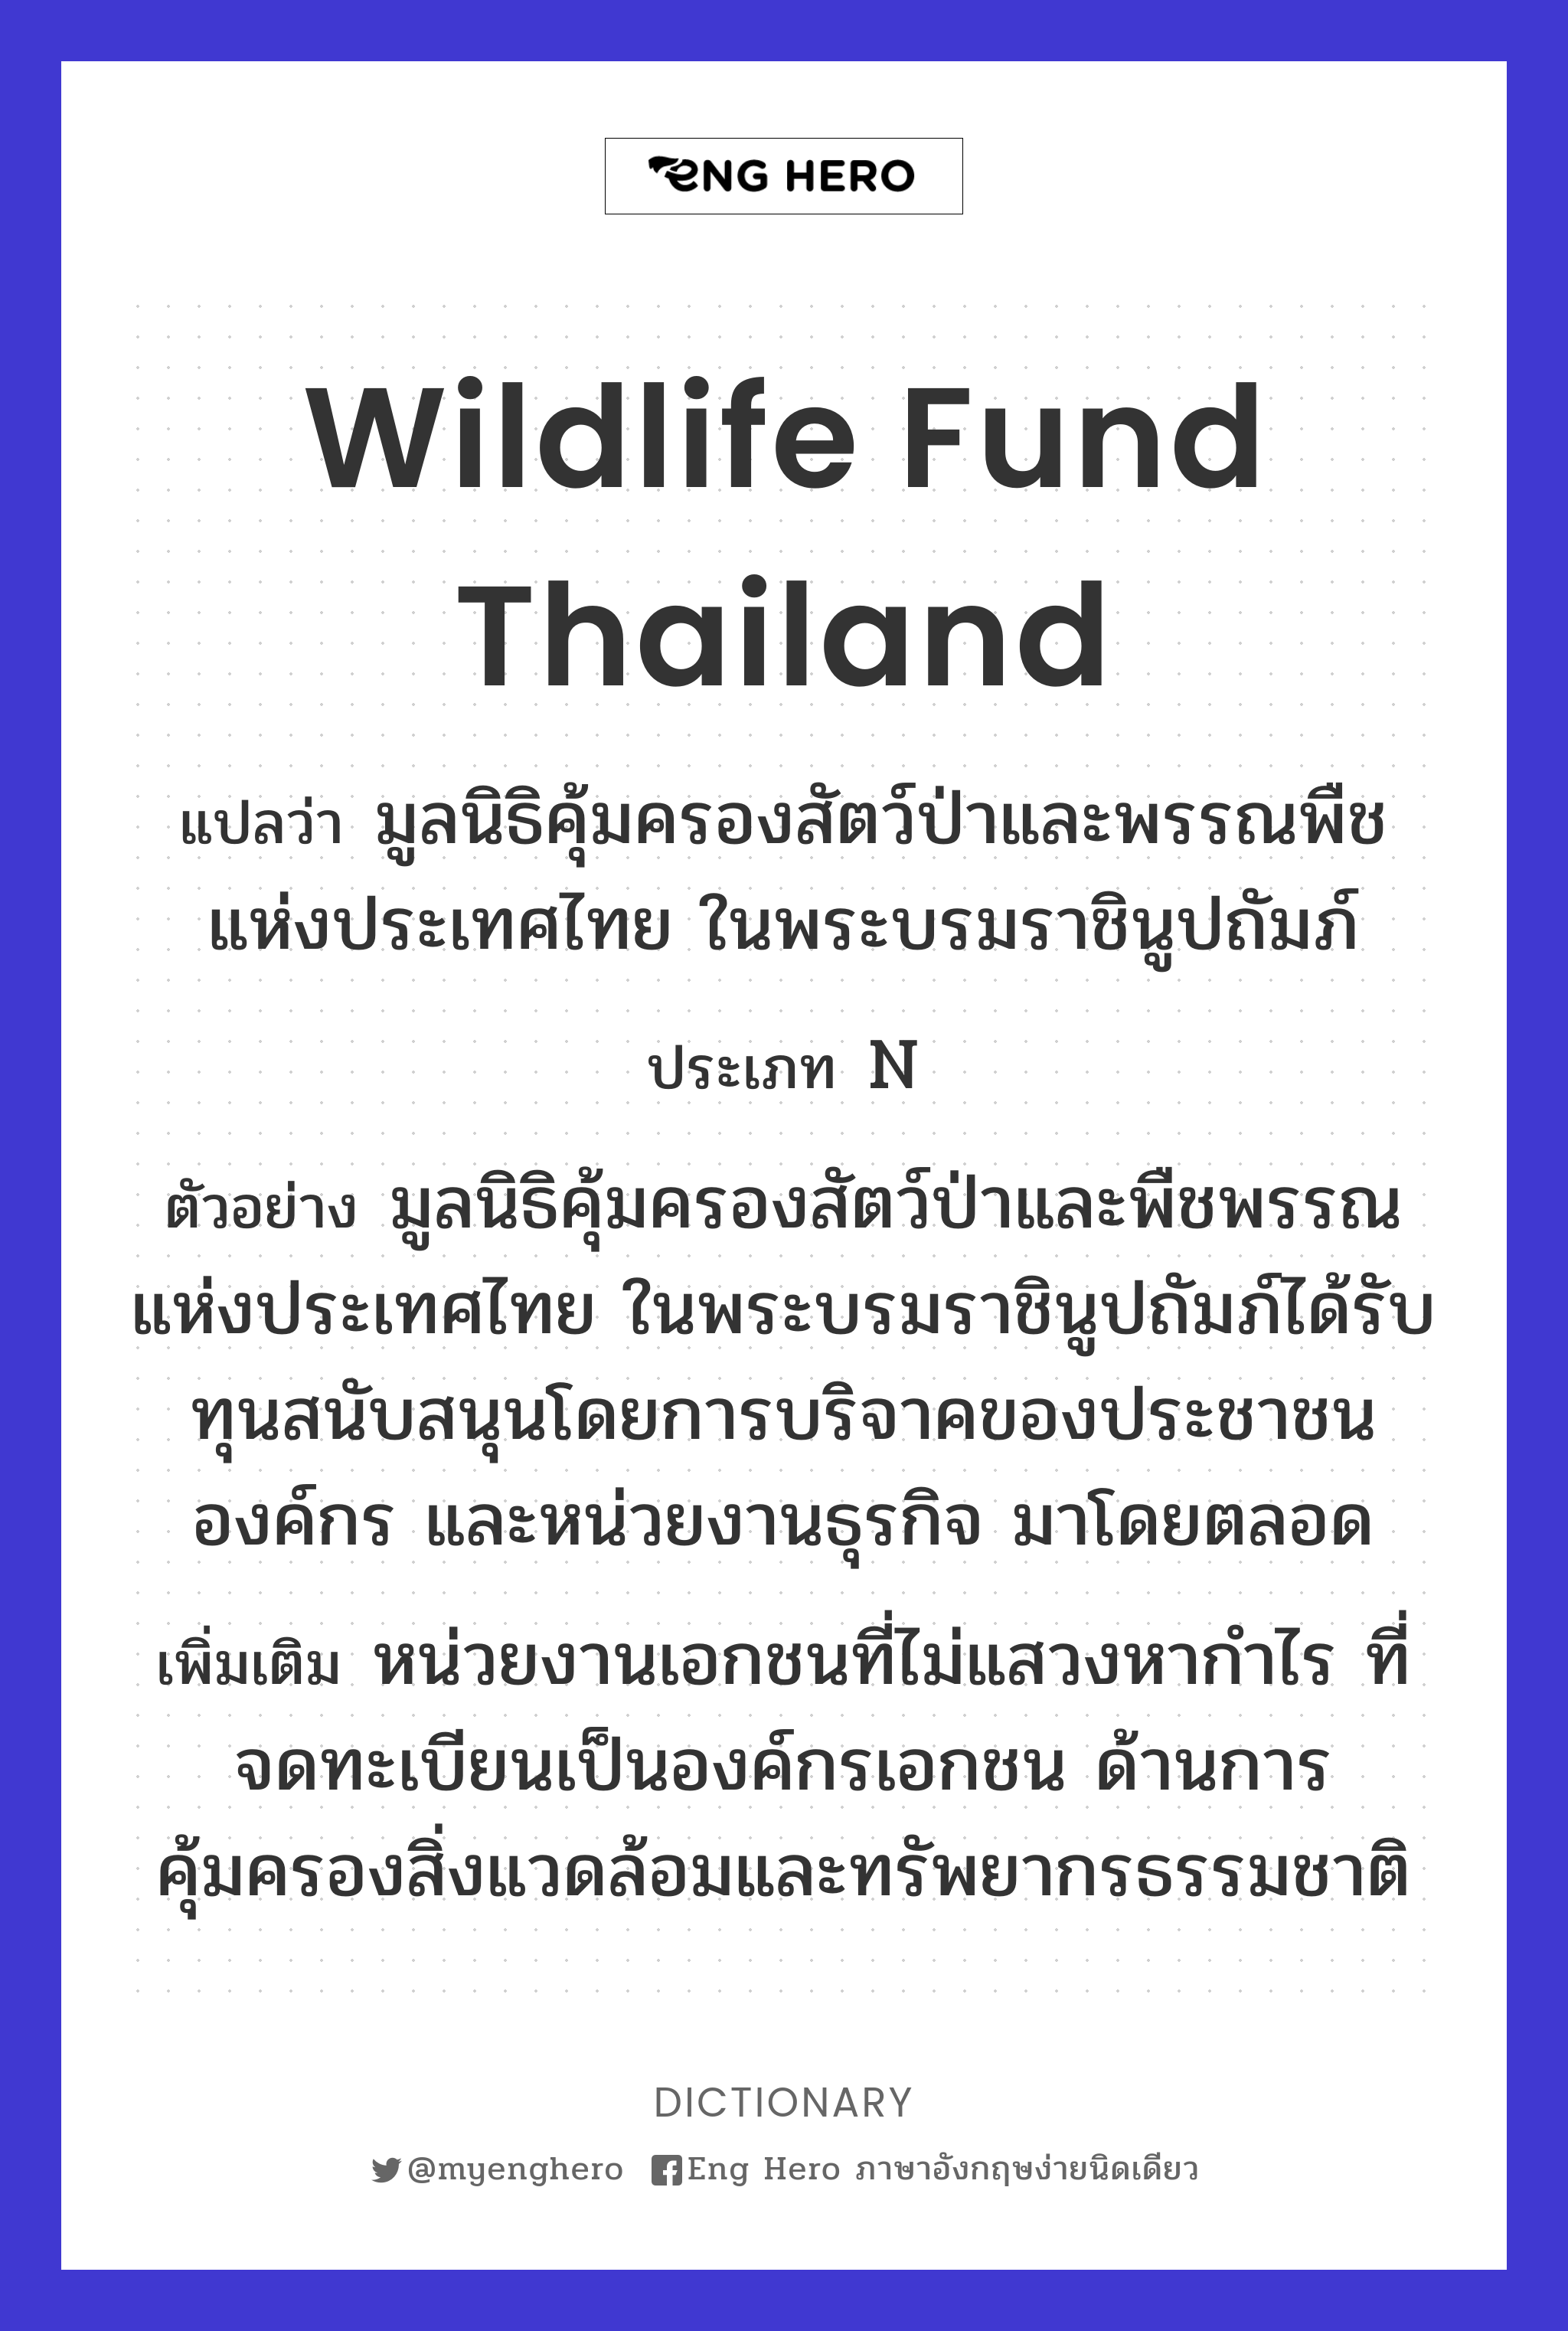 Wildlife fund Thailand